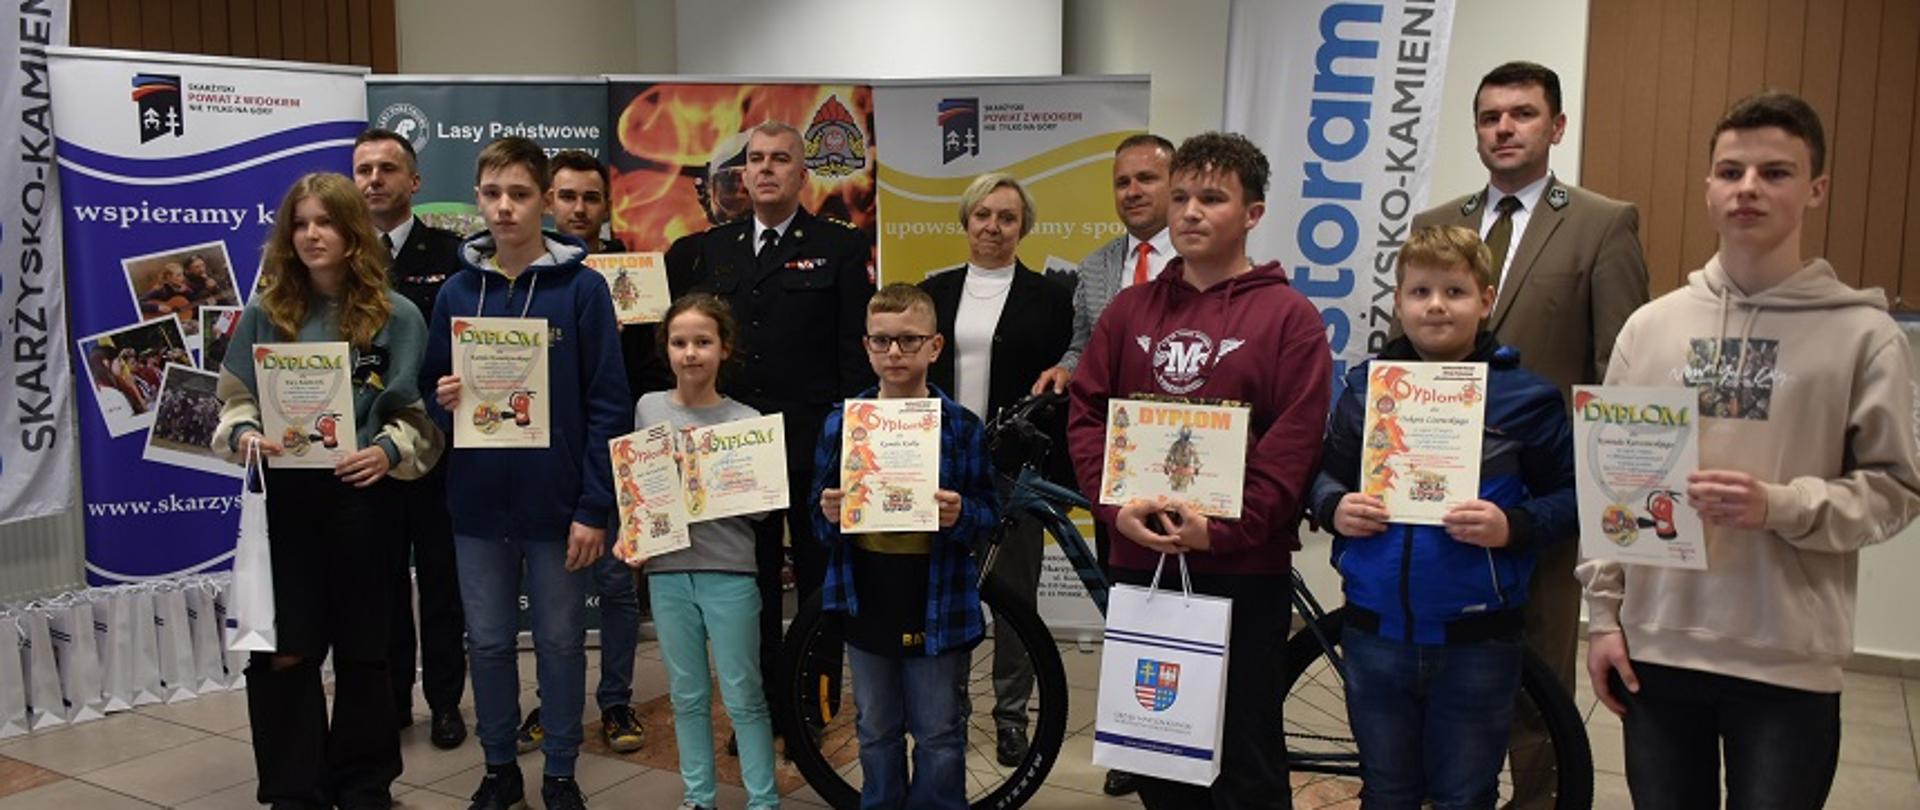 Zdjęcie obrazuje zwycięzców eliminacji powiatowego Ogólnopolskiego Turnieju Wiedzy Pożarniczej. Na zdjęciu widać dziesięcioro dzieci wraz z otrzymanymi nagrodami. 